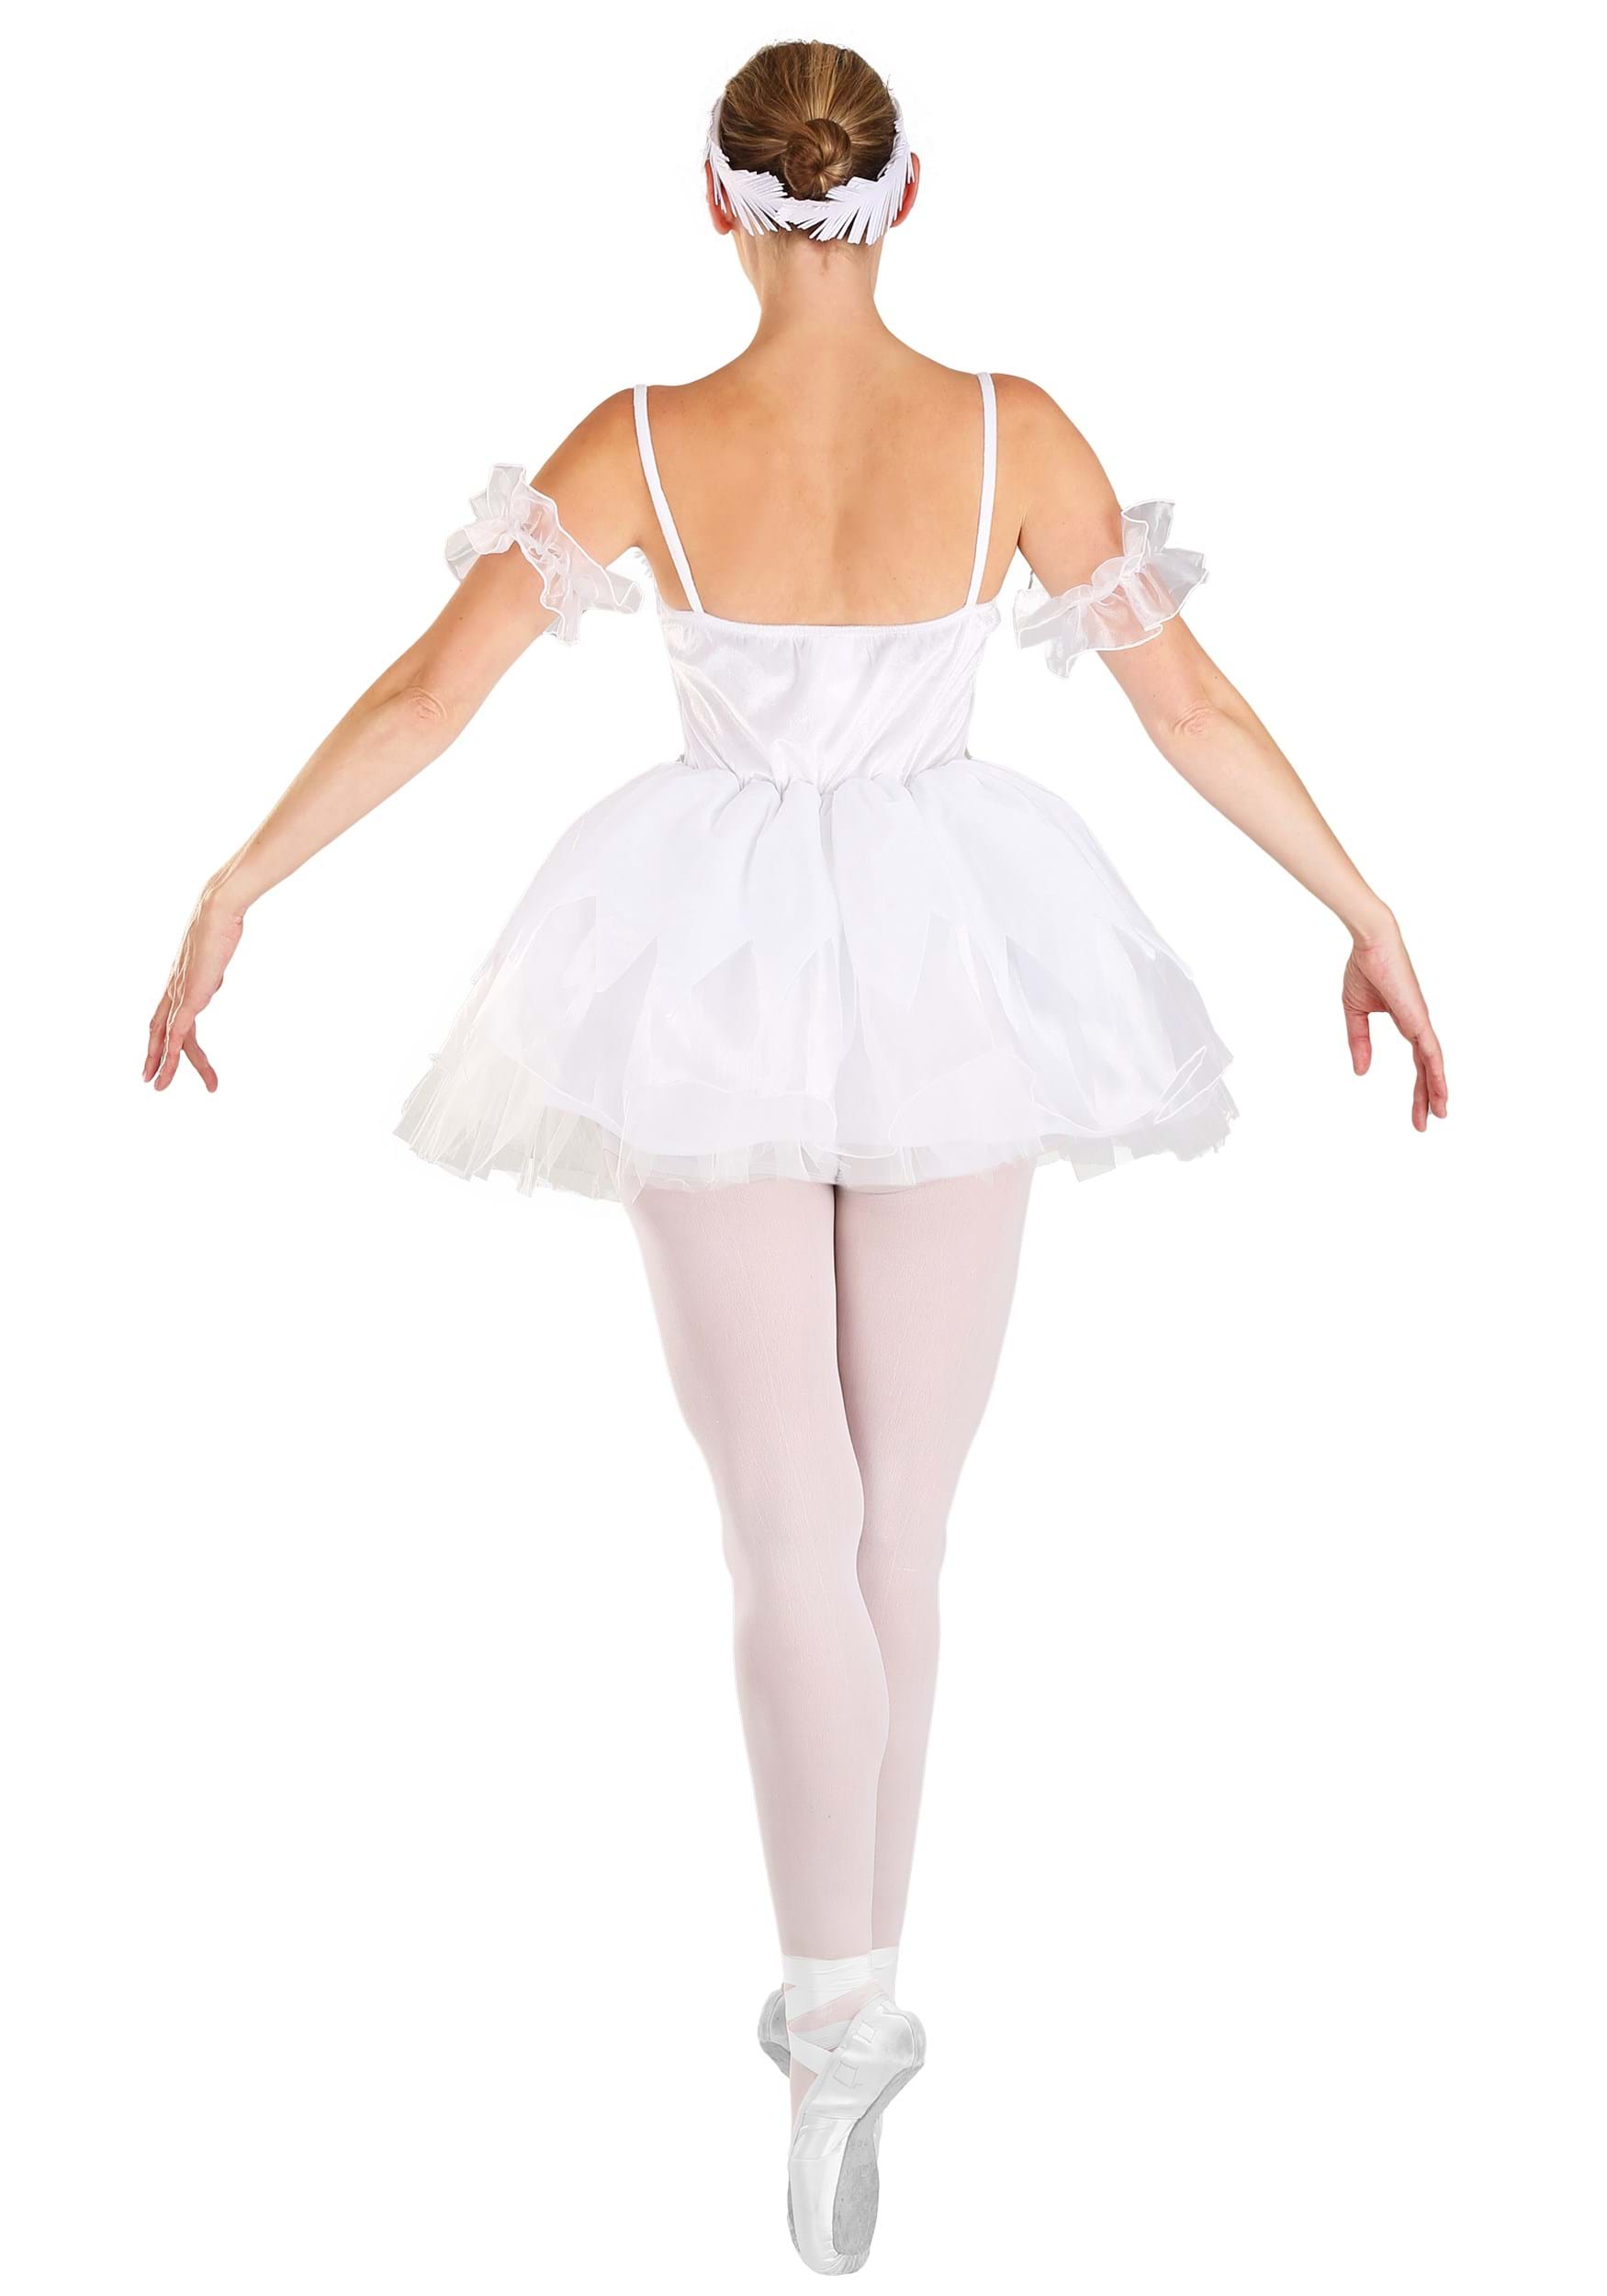 Women's White Swan Fancy Dress Costume